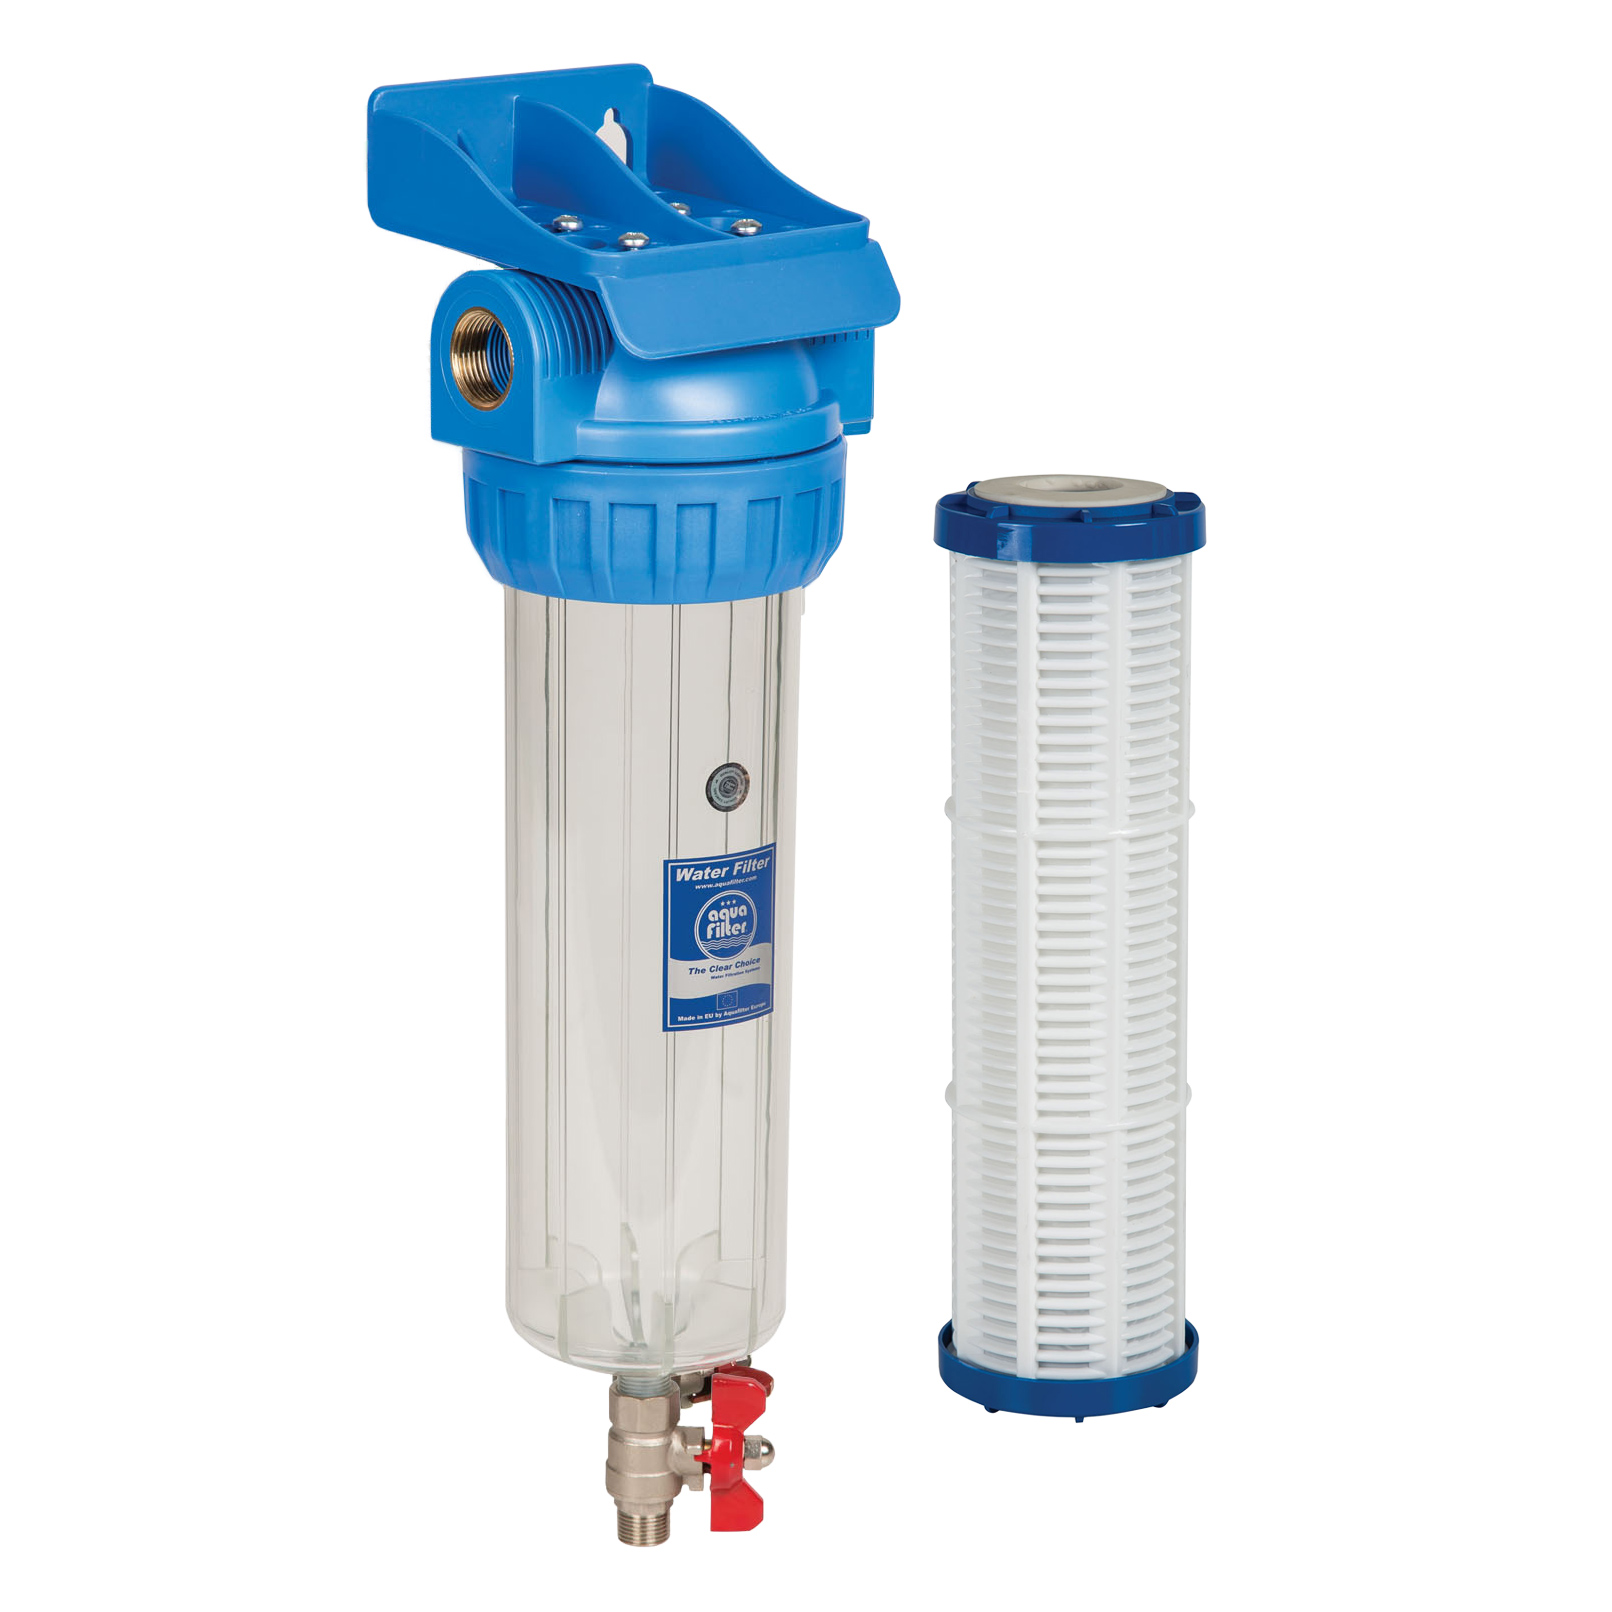 Фильтр воды вв 10. 281750-20 Корпус водяного фильтра 95 body Water Filter Johnston Sweepers. Bb20 корпус фильтра со сливом. Водяной фильтр 950 WTS. Магистральный фильтр со сливным краном.